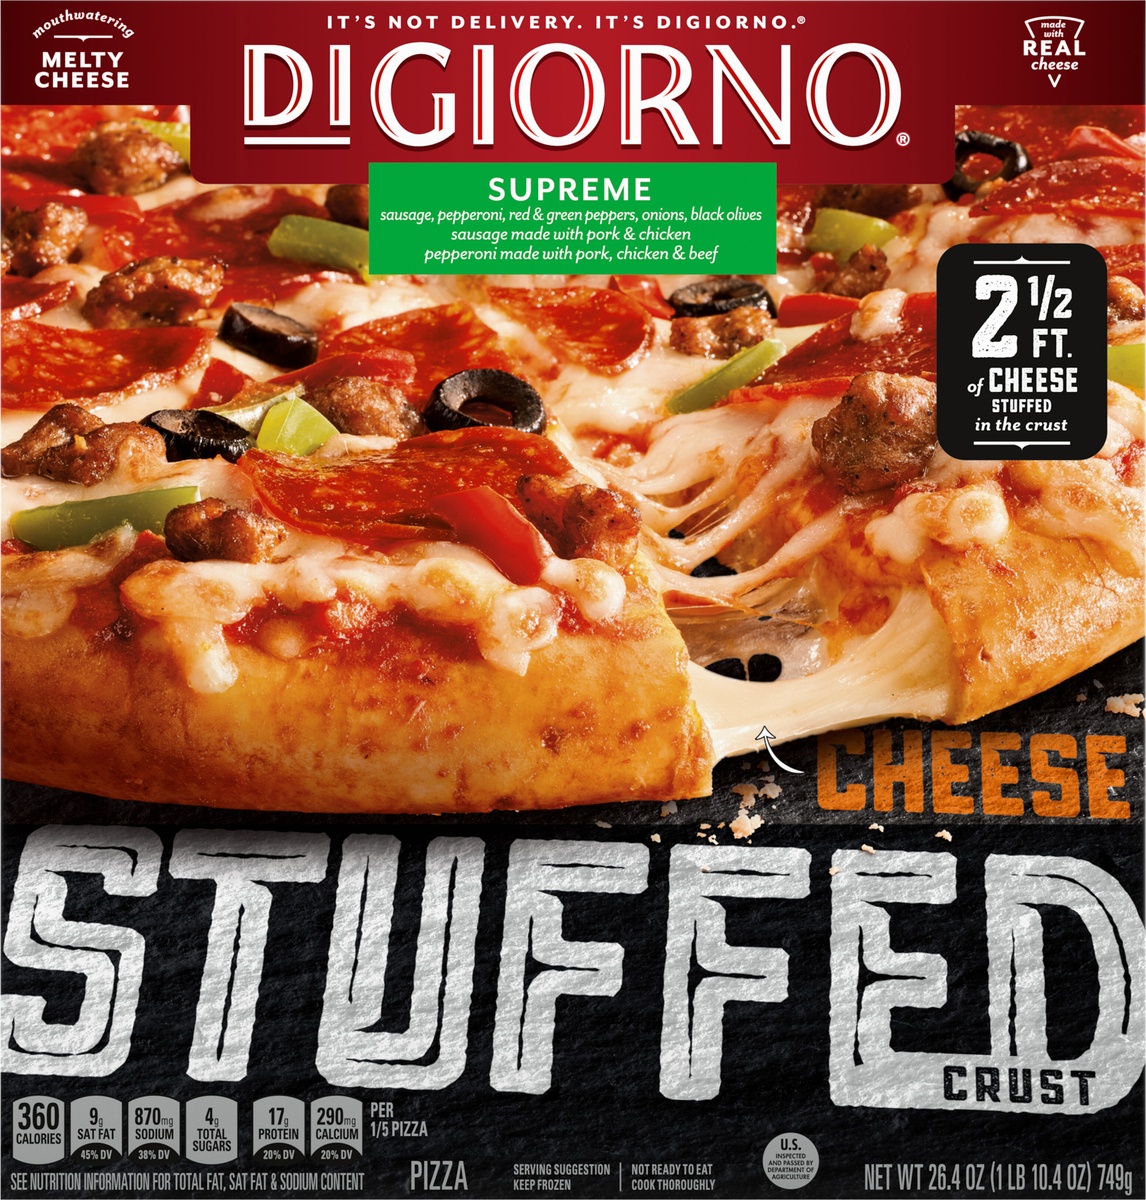 slide 11 of 11, DIGIORNO Supreme Frozen Pizza on a Cheese Stuffed Crust, 26.4 oz